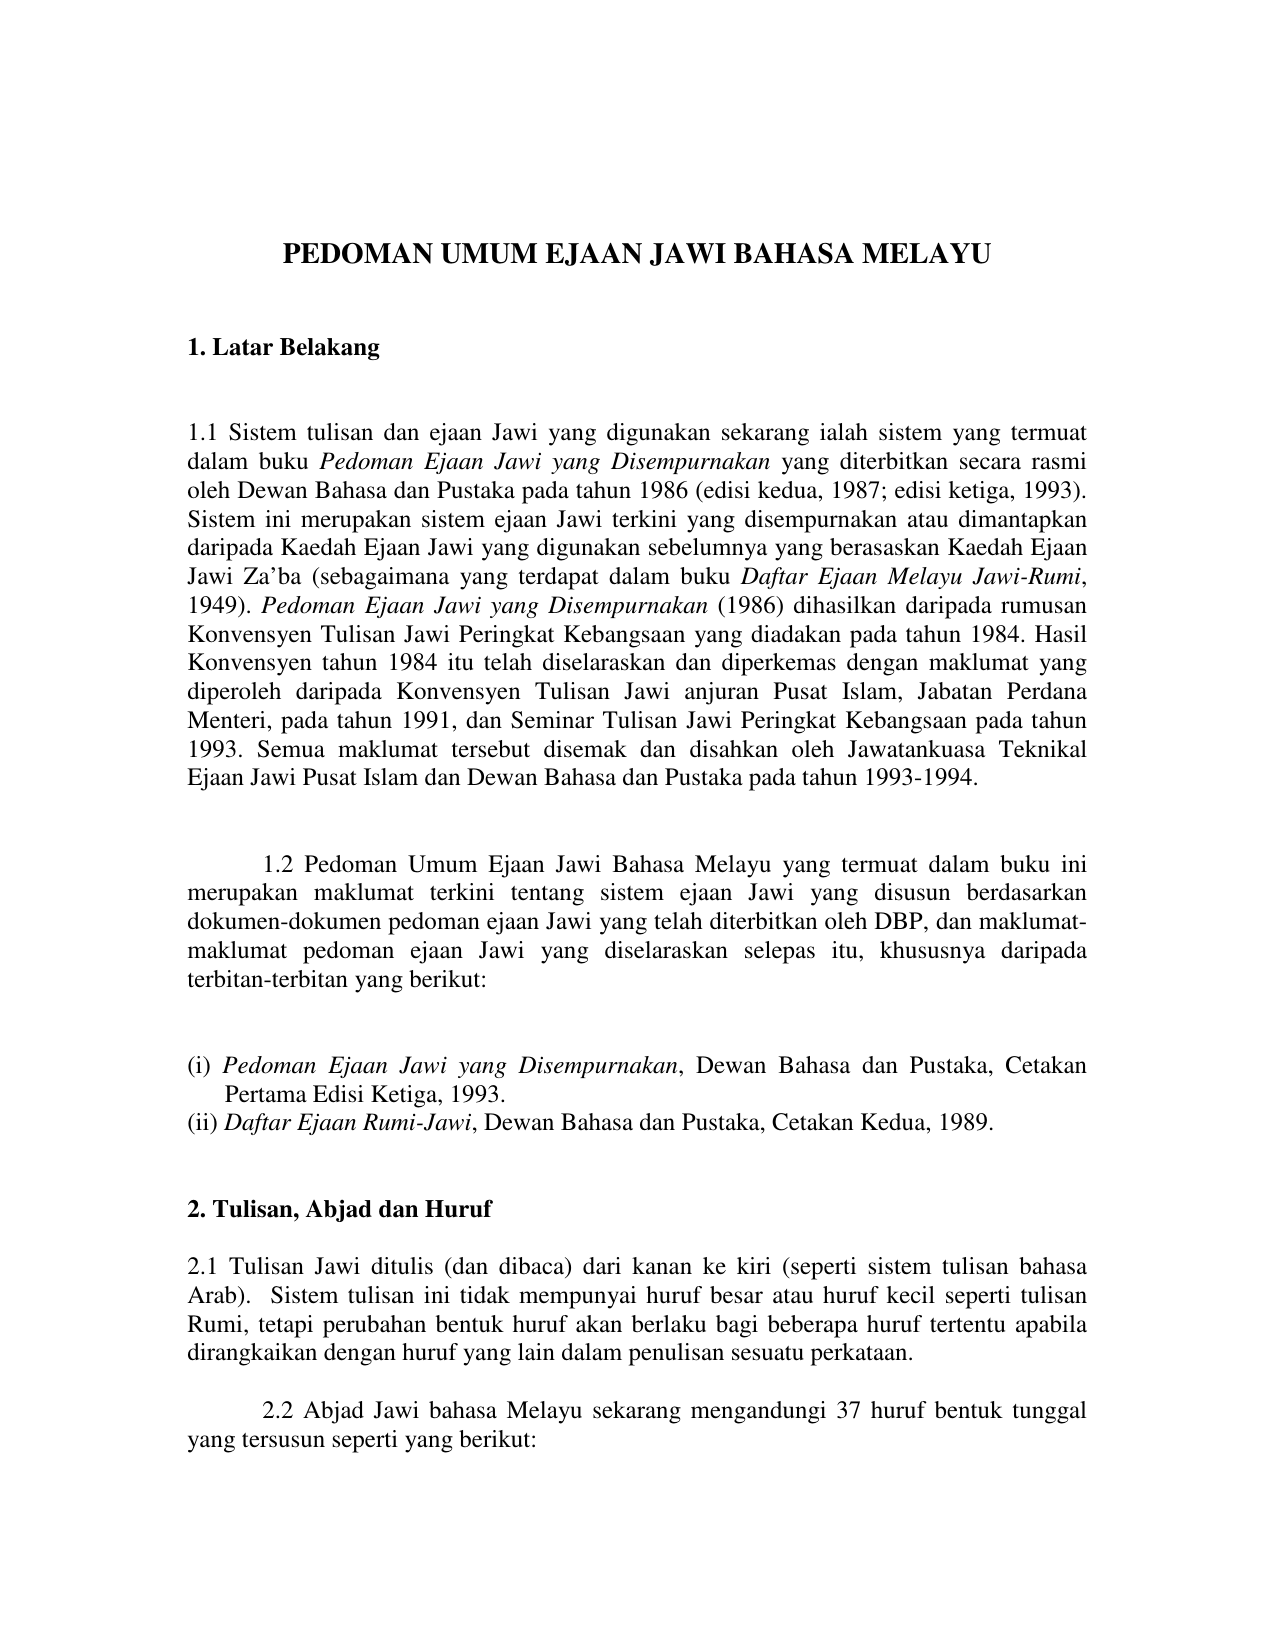 Pedoman Umum Ejaan Jawi Bahasa Melayu